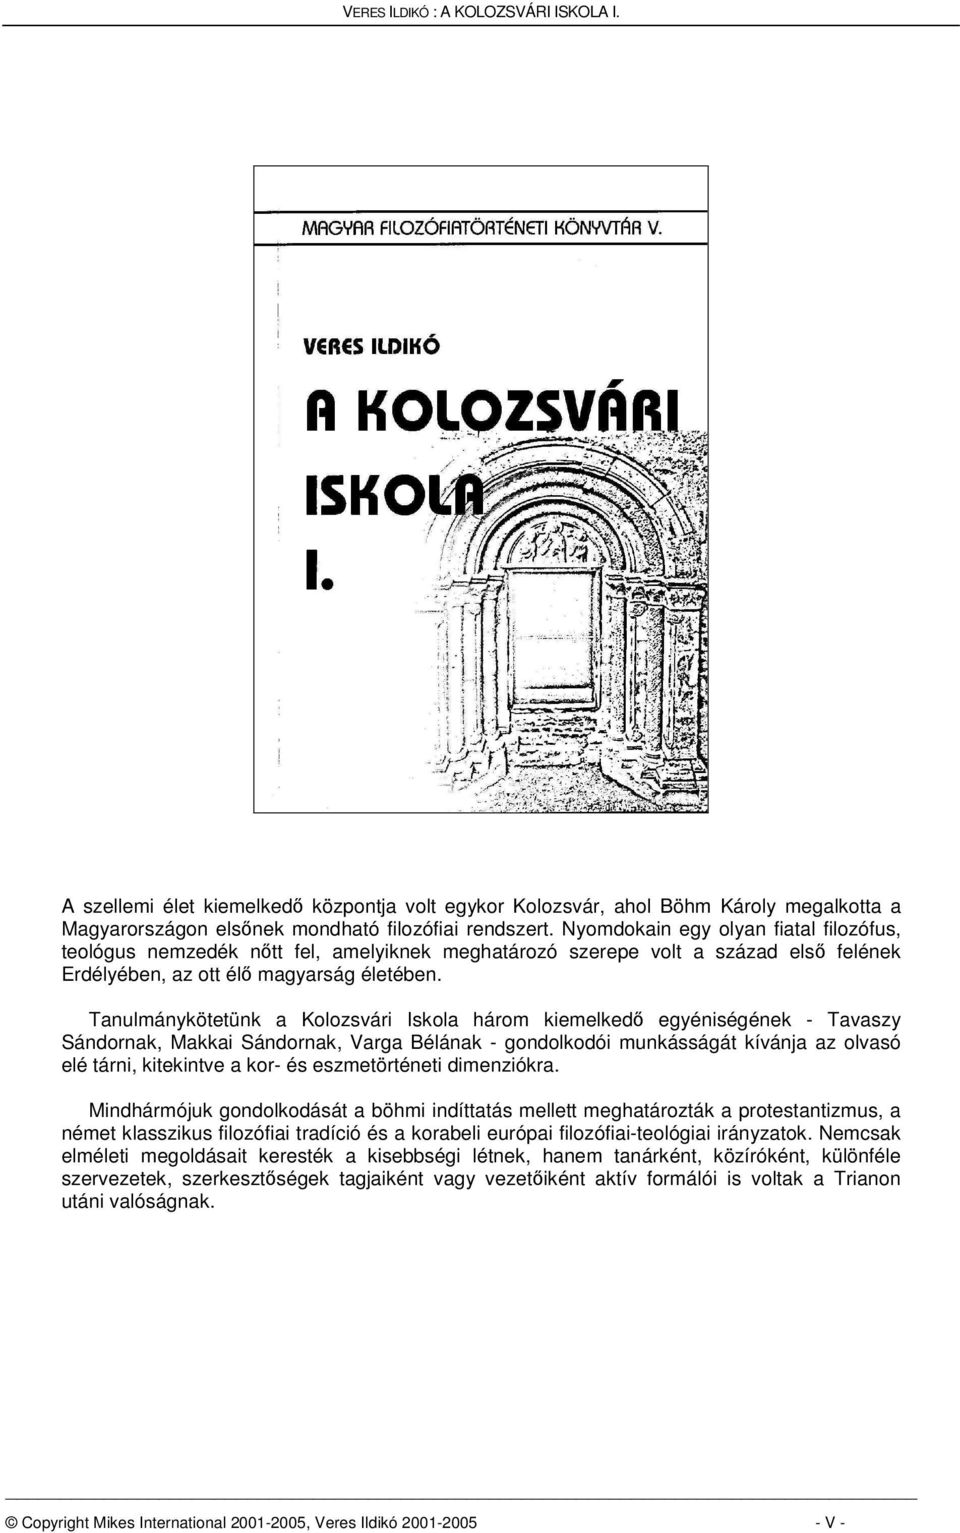 Tanulmánykötetünk a Kolozsvári Iskola három kiemelked egyéniségének - Tavaszy Sándornak, Makkai Sándornak, Varga Bélának - gondolkodói munkásságát kívánja az olvasó elé tárni, kitekintve a kor- és